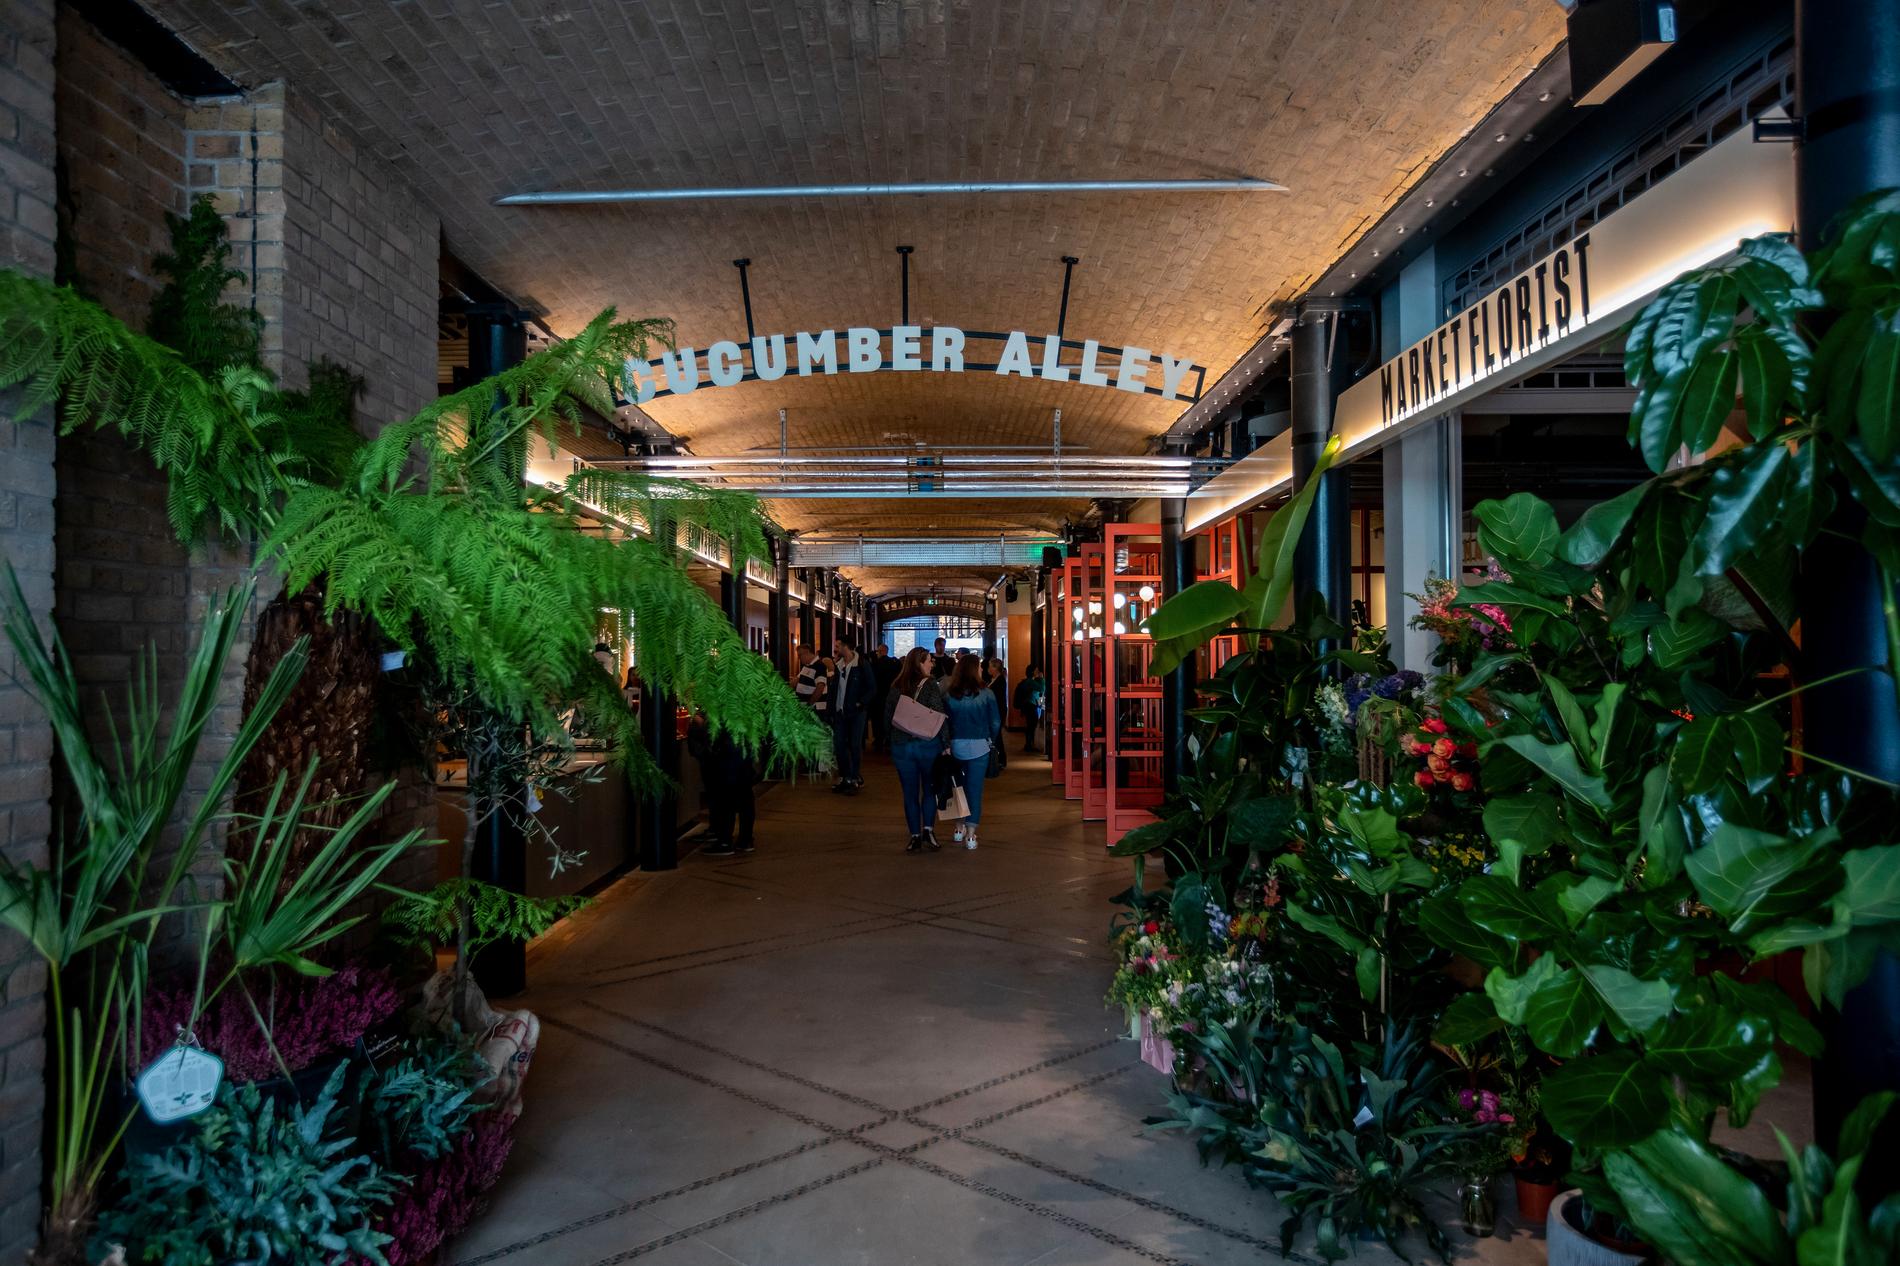 Cucumber alley är en gång full av specialistbutiker. 